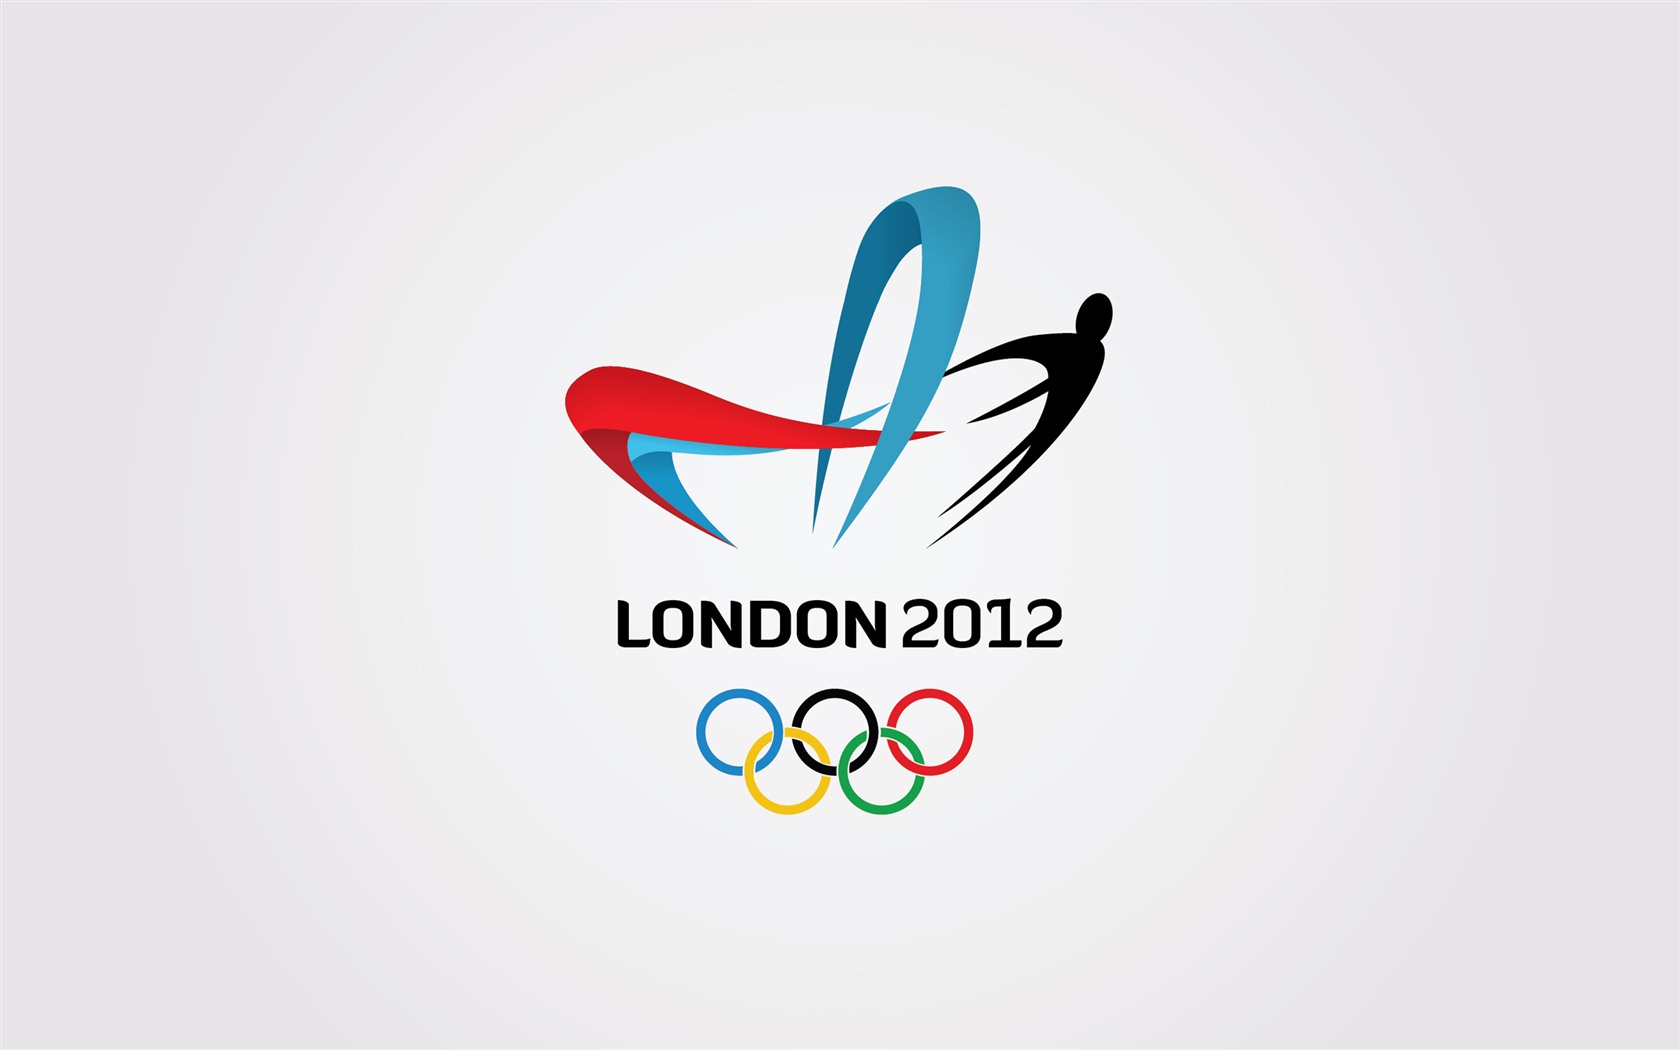 Londres 2012 Olimpiadas fondos temáticos (2) #25 - 1680x1050